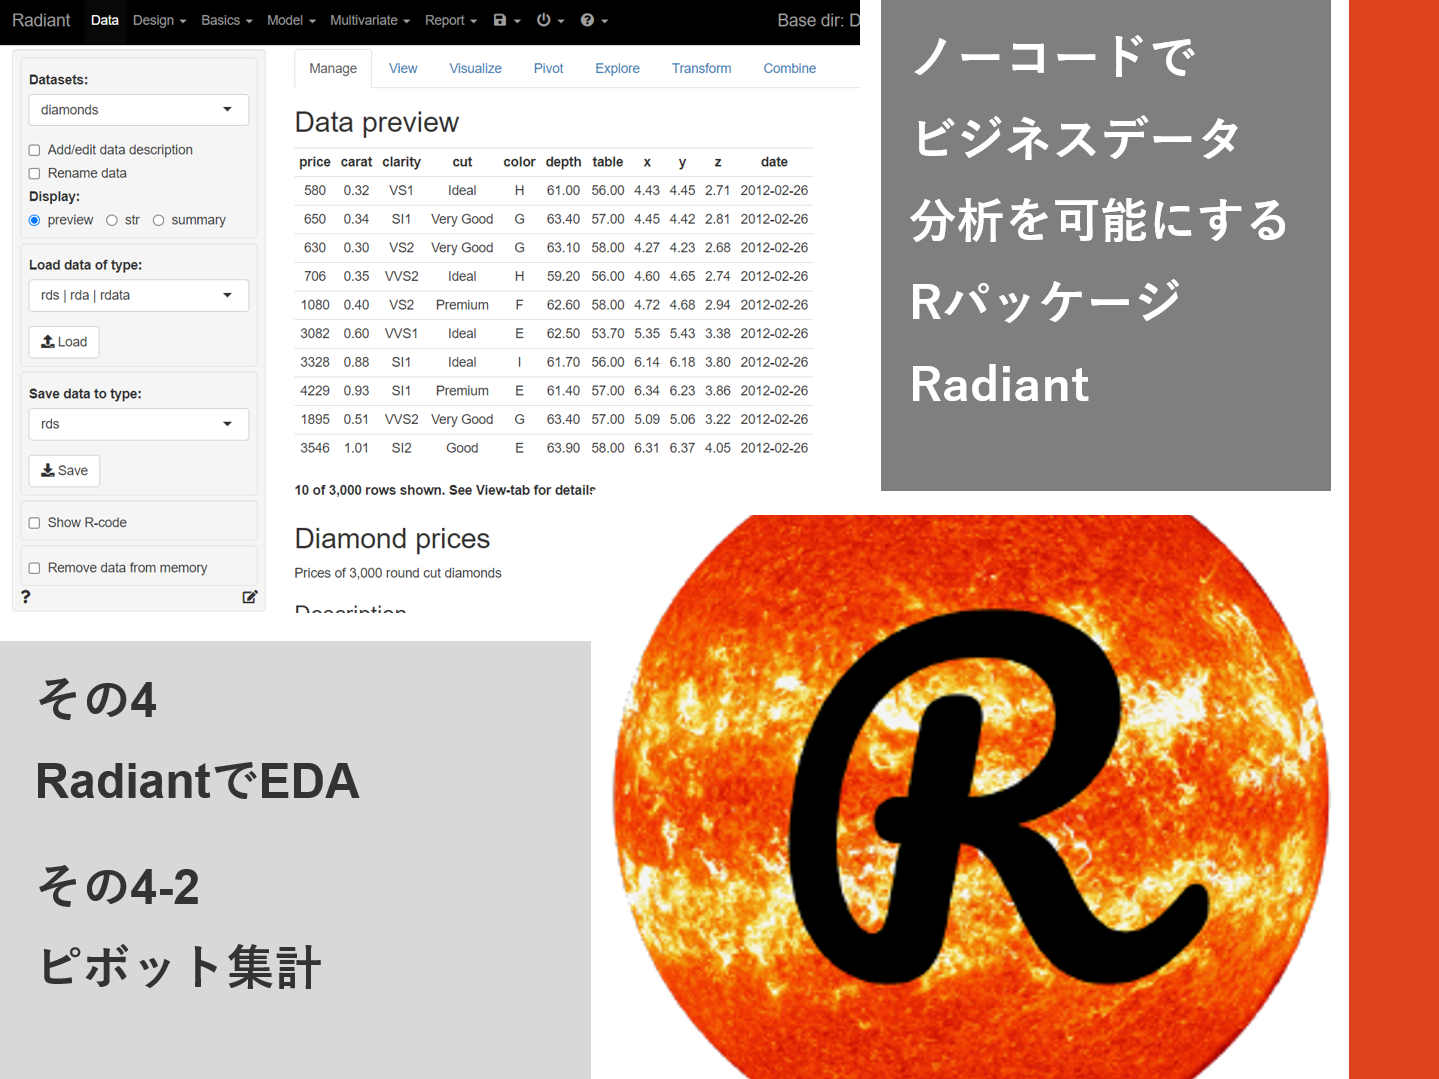 ノーコードでビジネスデータ分析を可能にするRパッケージRadiant<br>その4-2（RadiantでEDA – ピボット集計）